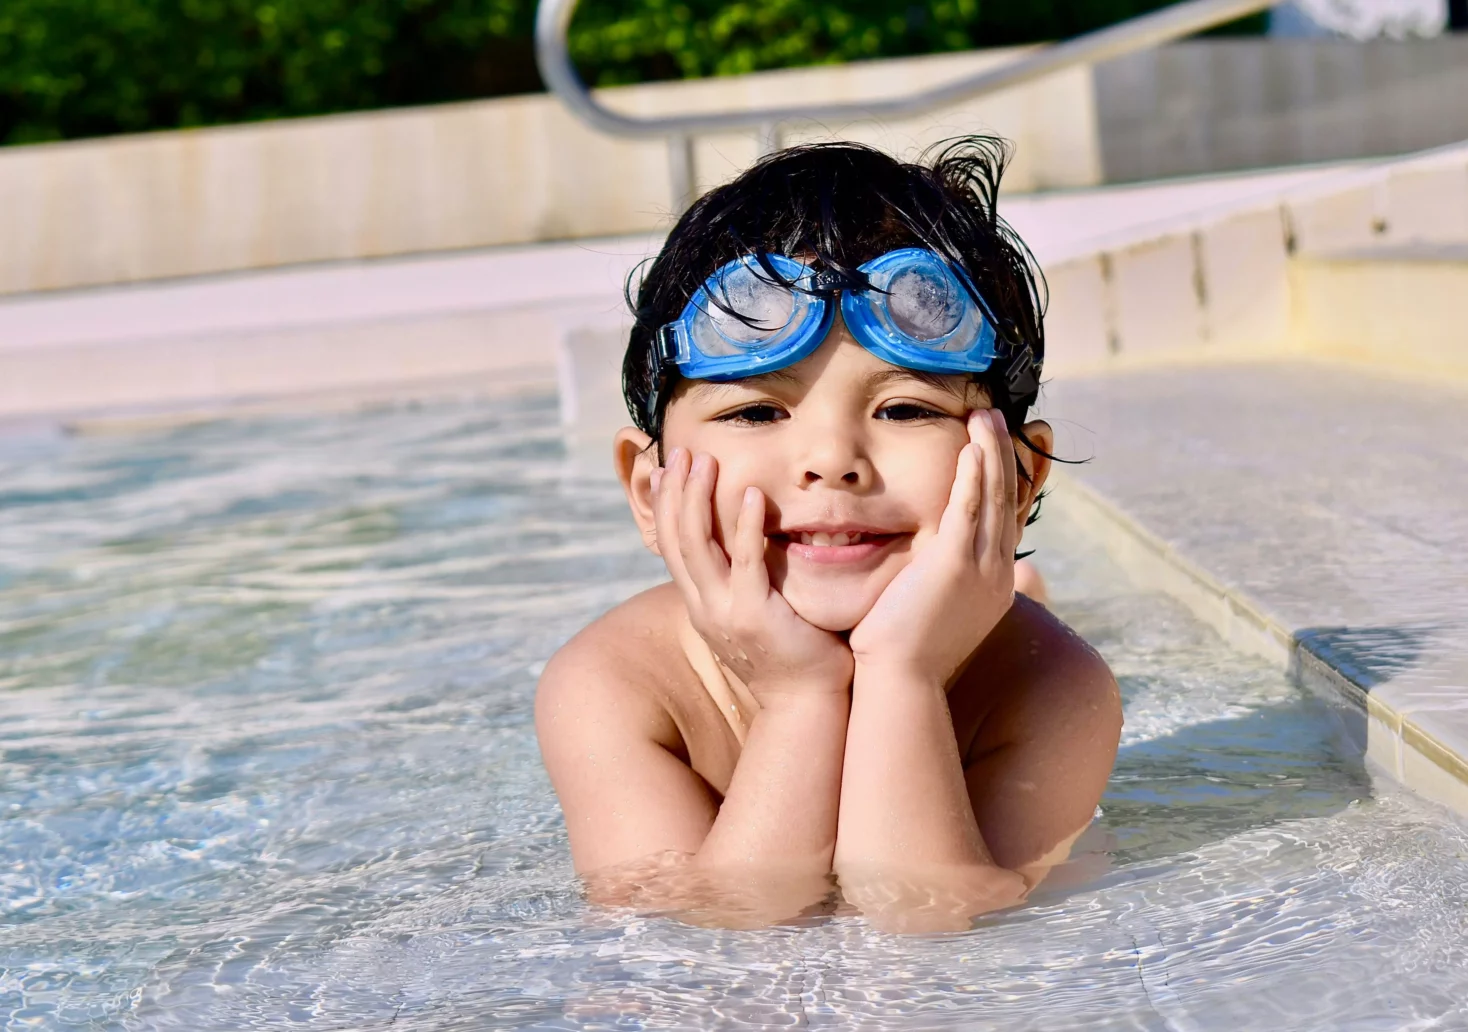 Bild auf 5min.at zeigt ein Kind in einem Schwimmbecken.